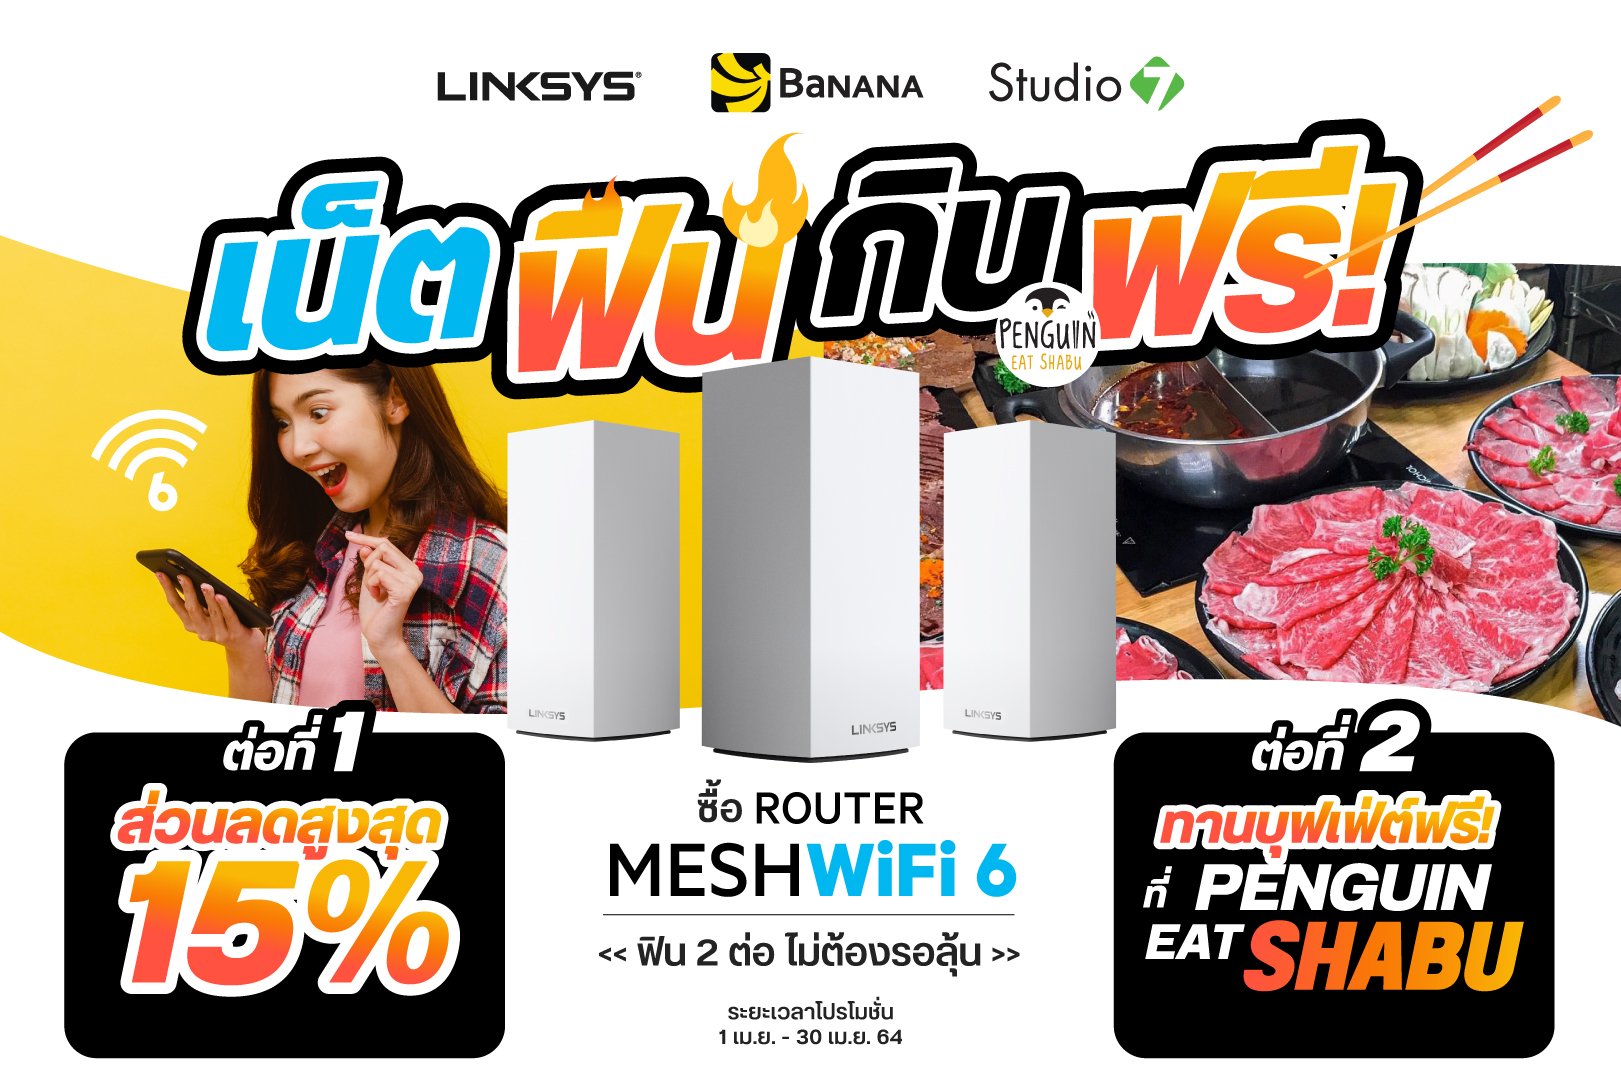 Linksys จับมือ Banana และ Studio 7 จัดโปร เน็ตฟิน! กินฟรี! ซื้อ Mesh WiFi 6 ราคาพิเศษ + กินบุฟเฟ่ต์ชาบู Penguin Eat Shabu ฟรี!